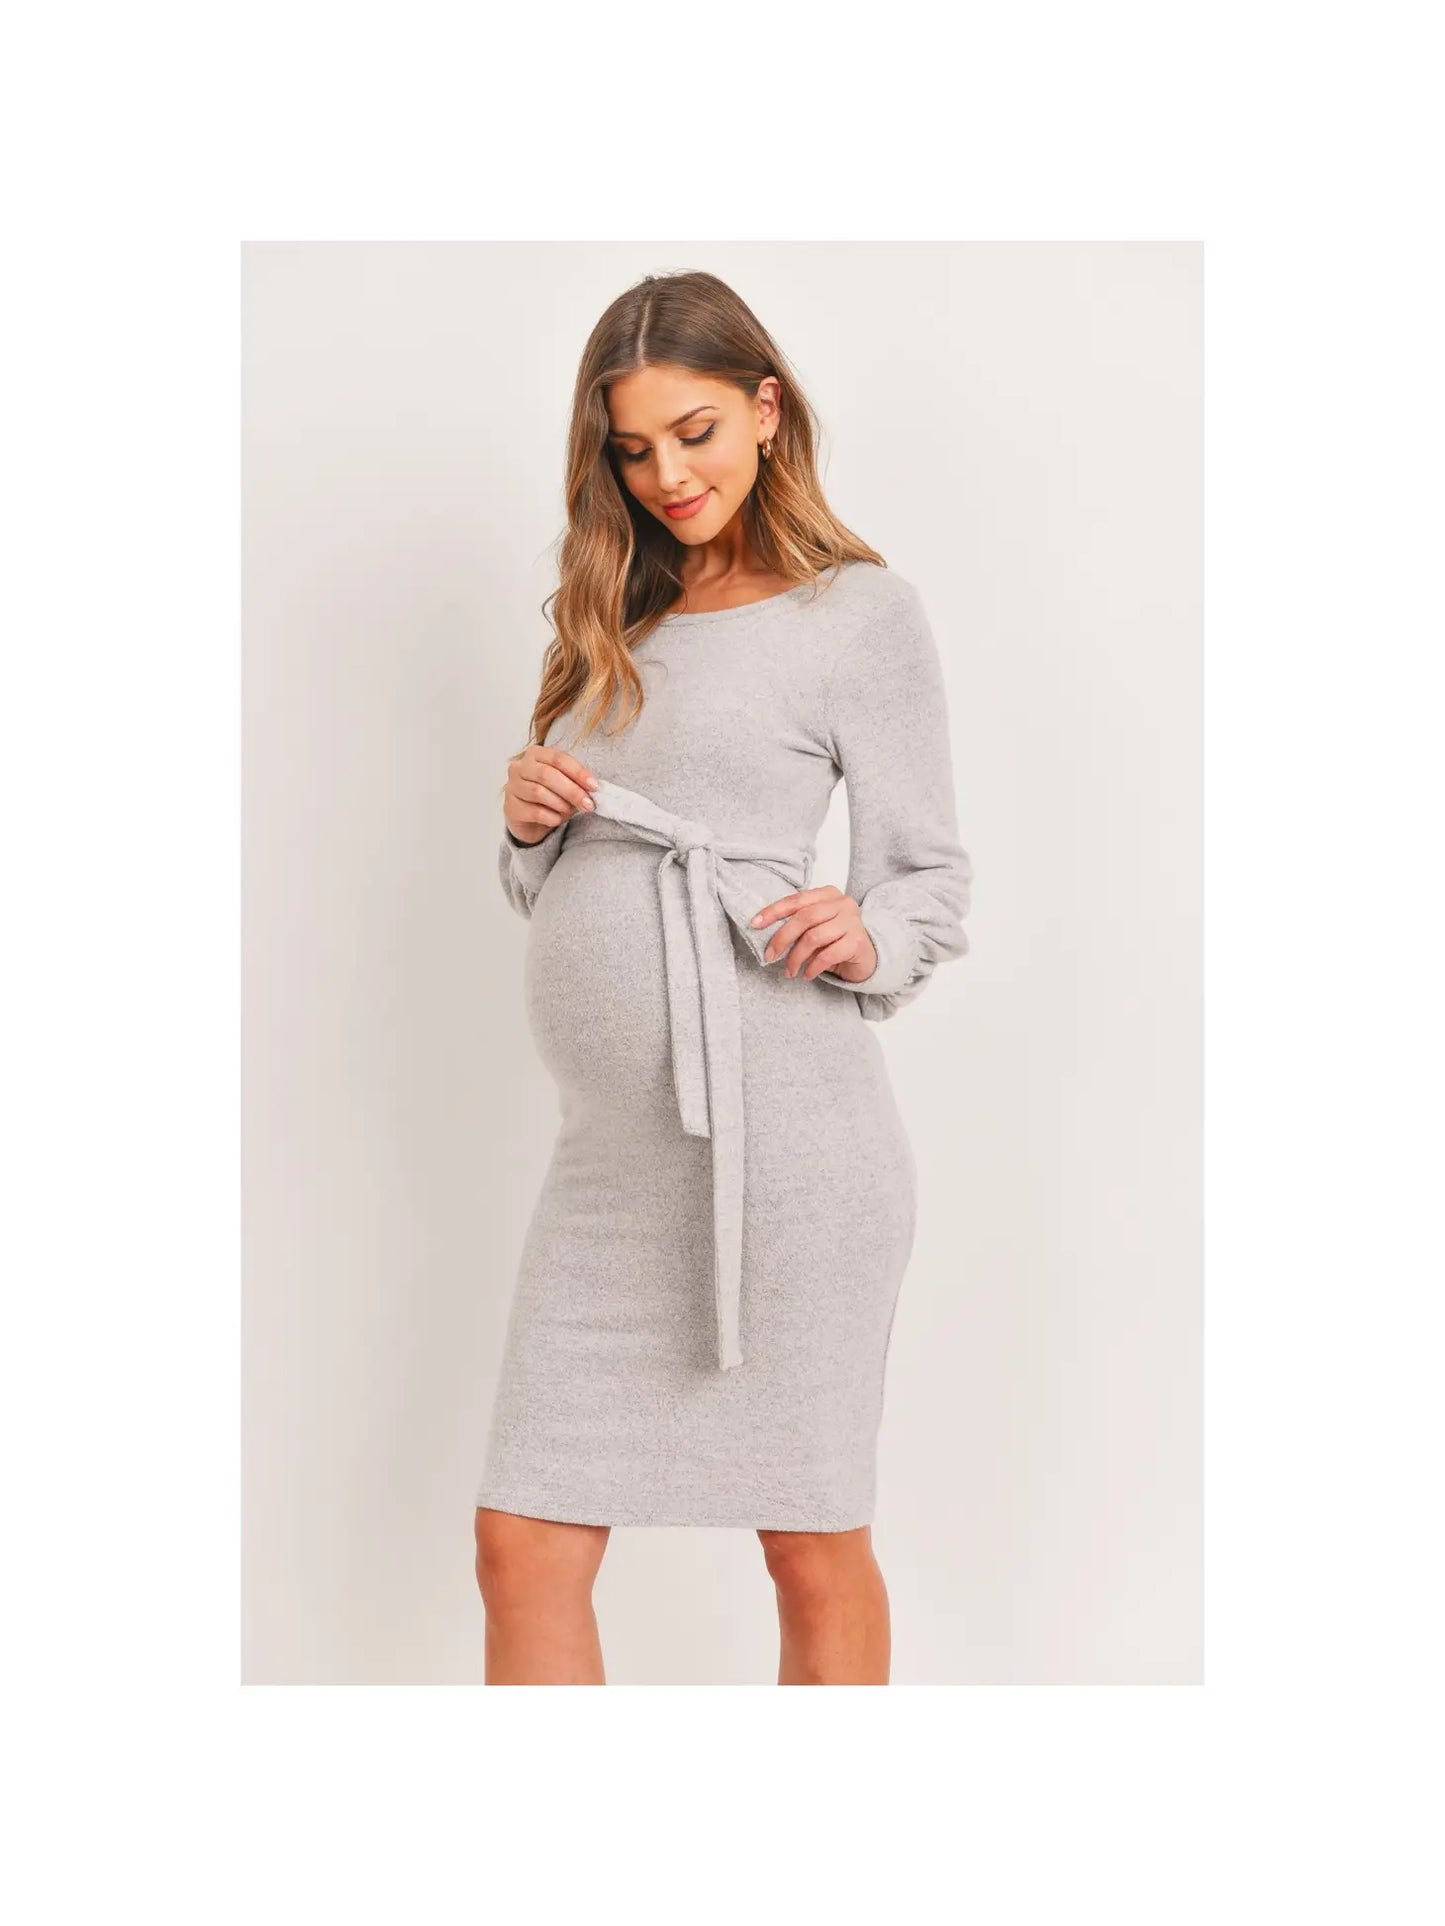 Blush Cashmere-Like Sweater Knit Maternity Dress